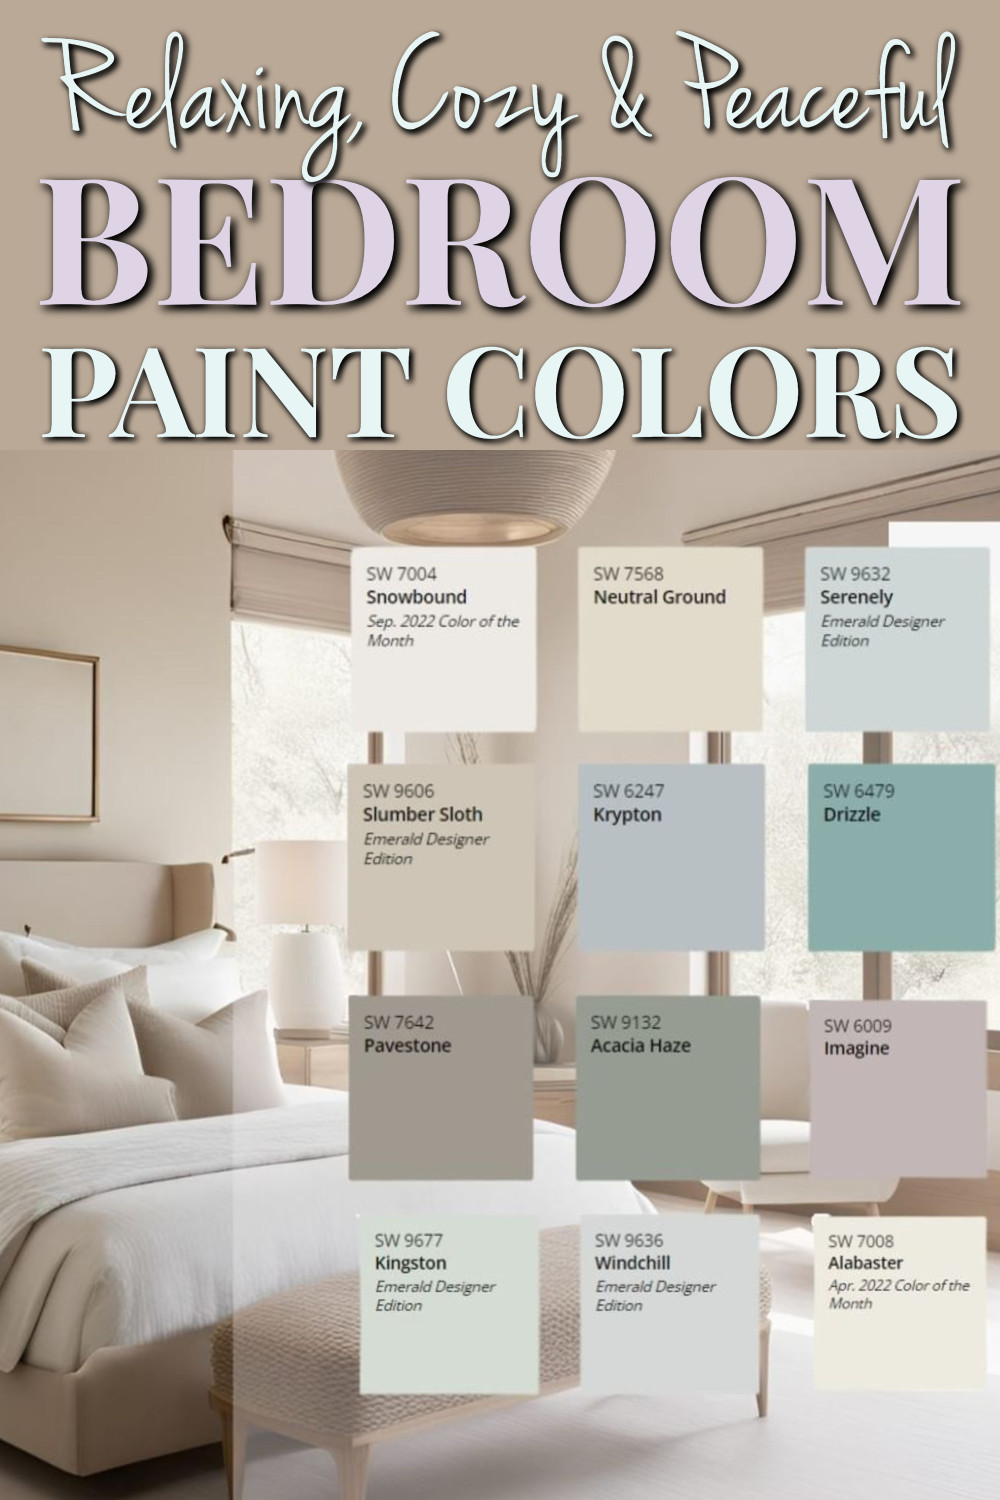 Best relaxing cozy bedroom paint colors